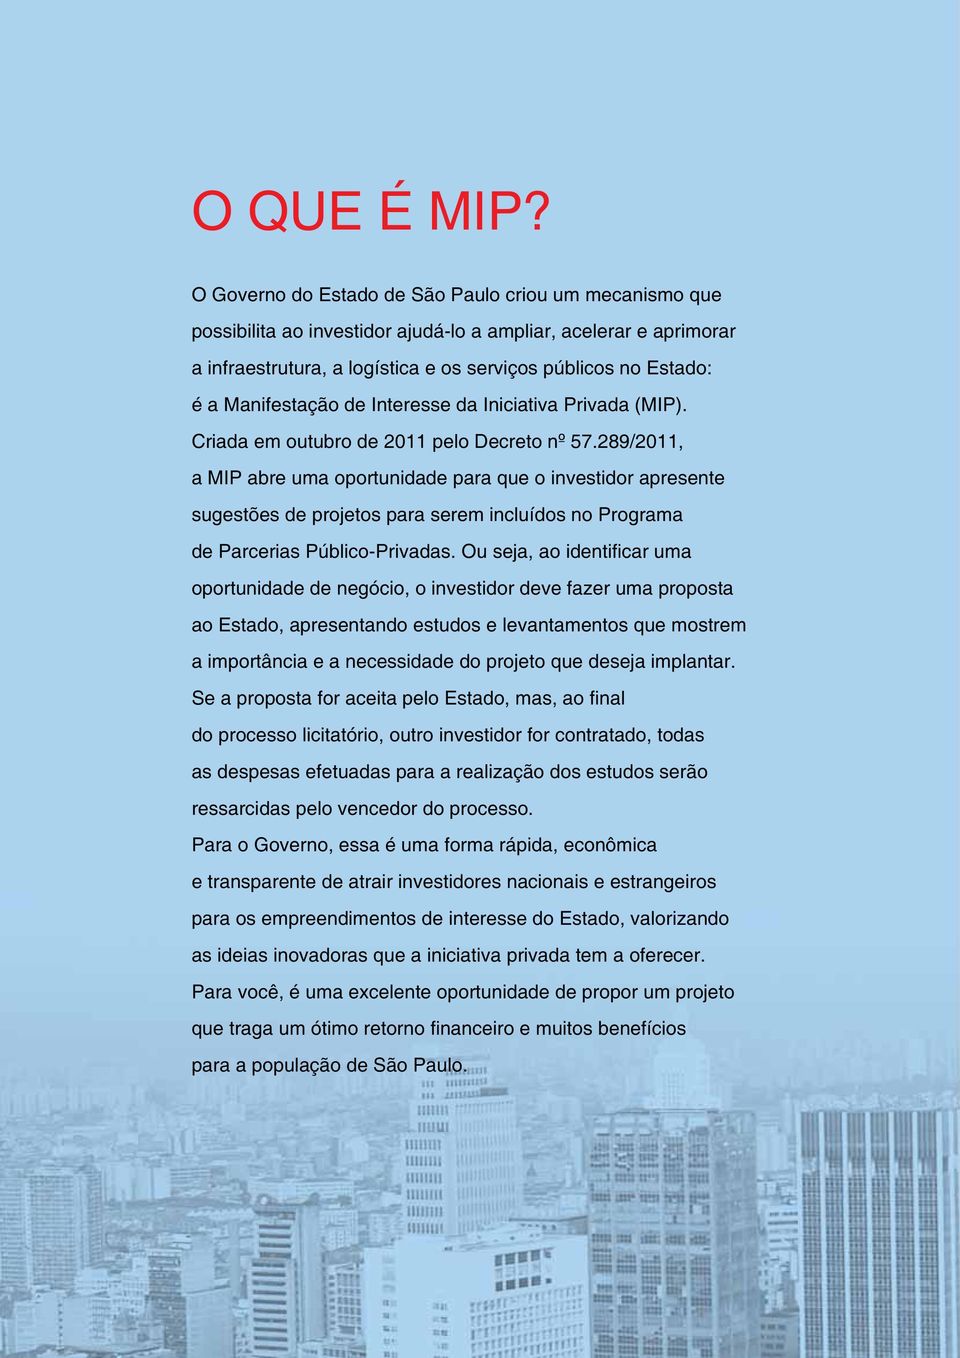 Manifestação de Interesse da Iniciativa Privada (MIP). Criada em outubro de 2011 pelo Decreto nº 57.